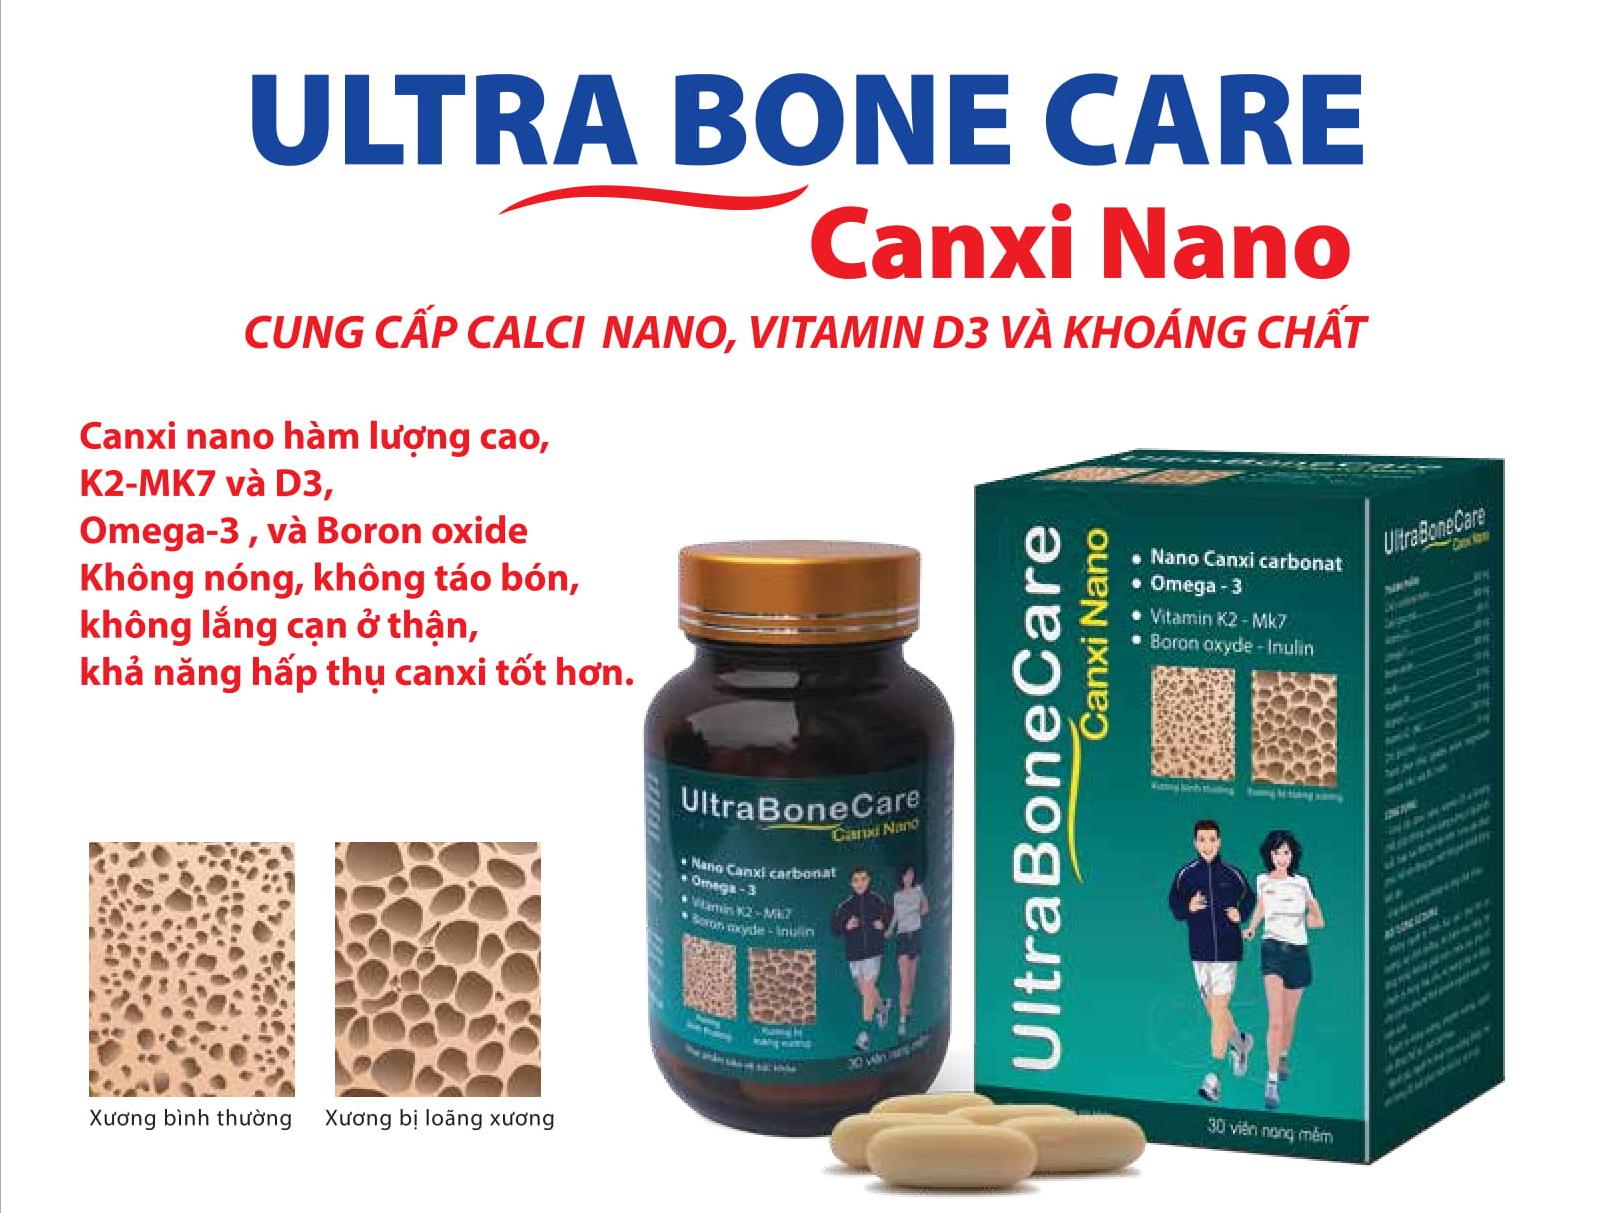 Viên Uống Bổ Sung Canxi Nano Ultrabone Care - Khỏi Lo Chuột Rút Tê Bì Chân Tay - Không Nóng, Không Gây Táo Bón - Bổ Sung Canxi, D3, Vitamin K2 (Mk7) - Lọ 30 Viên